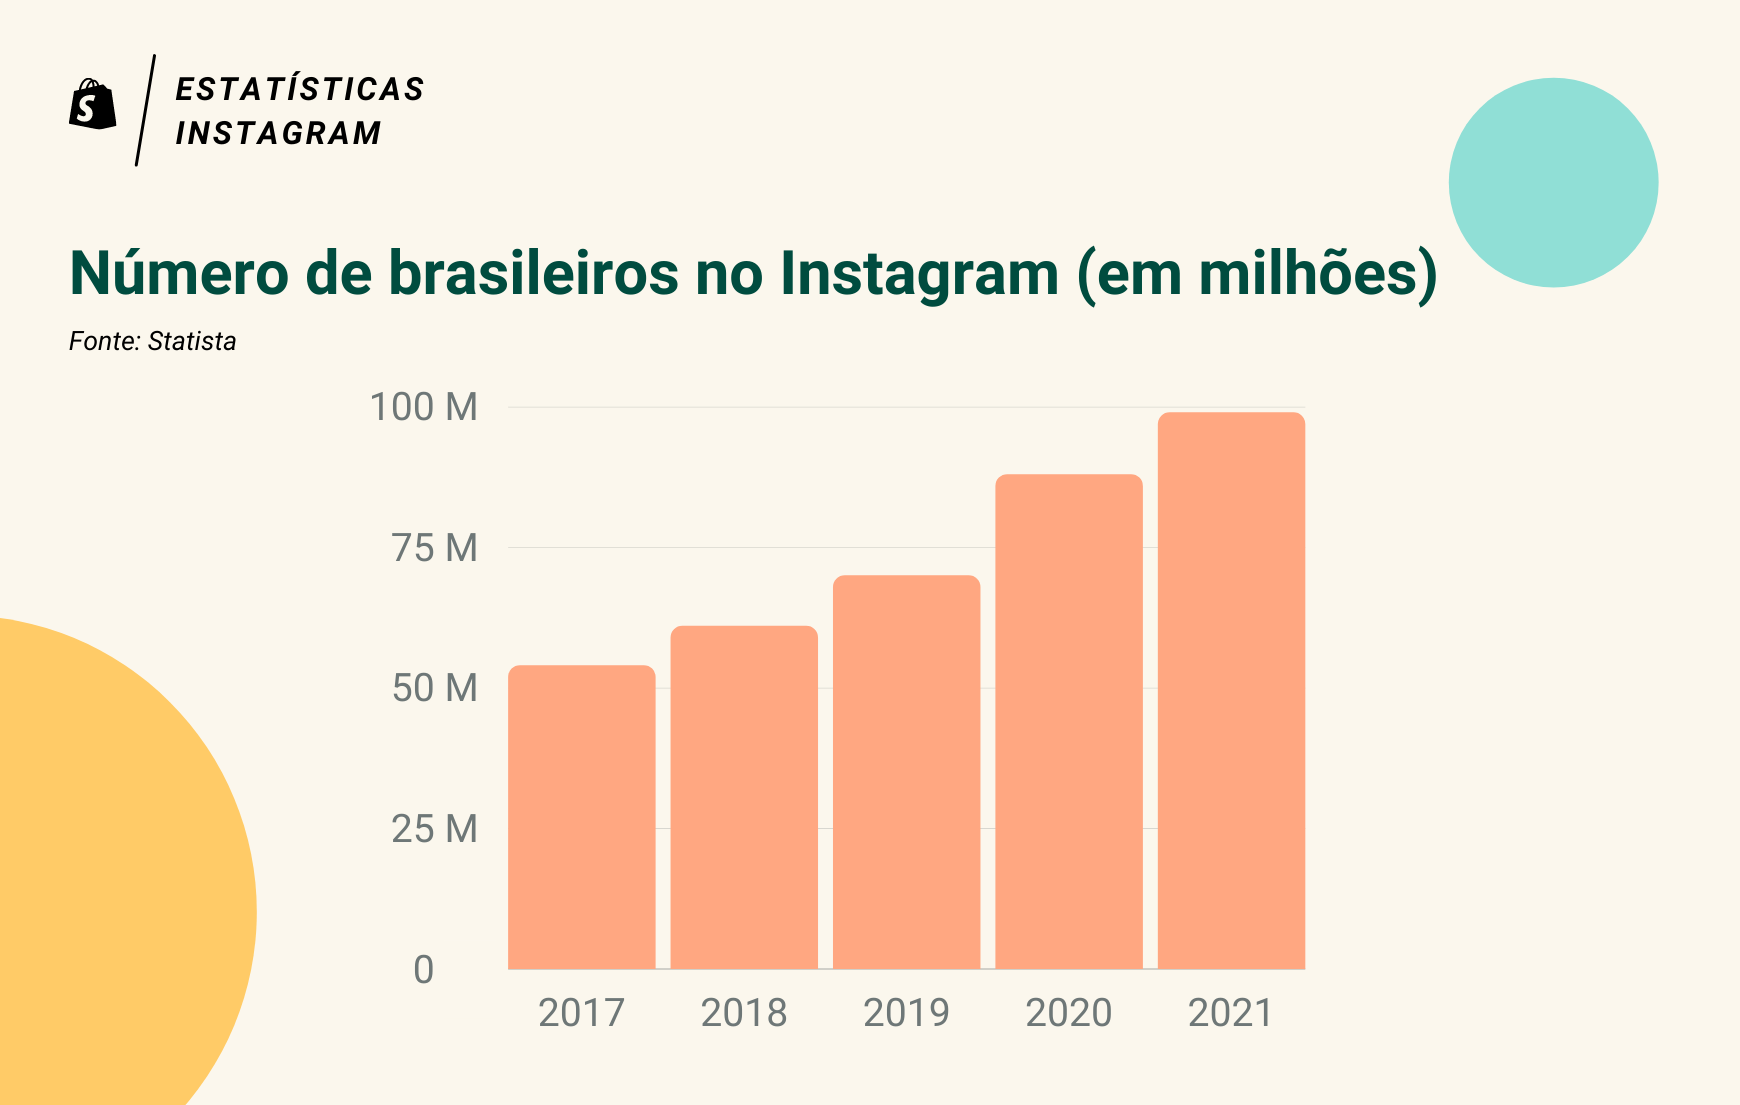 Gráfico com o crescimento da presença brasileira no Instagram. Os dados vão desde 2017 até 2021